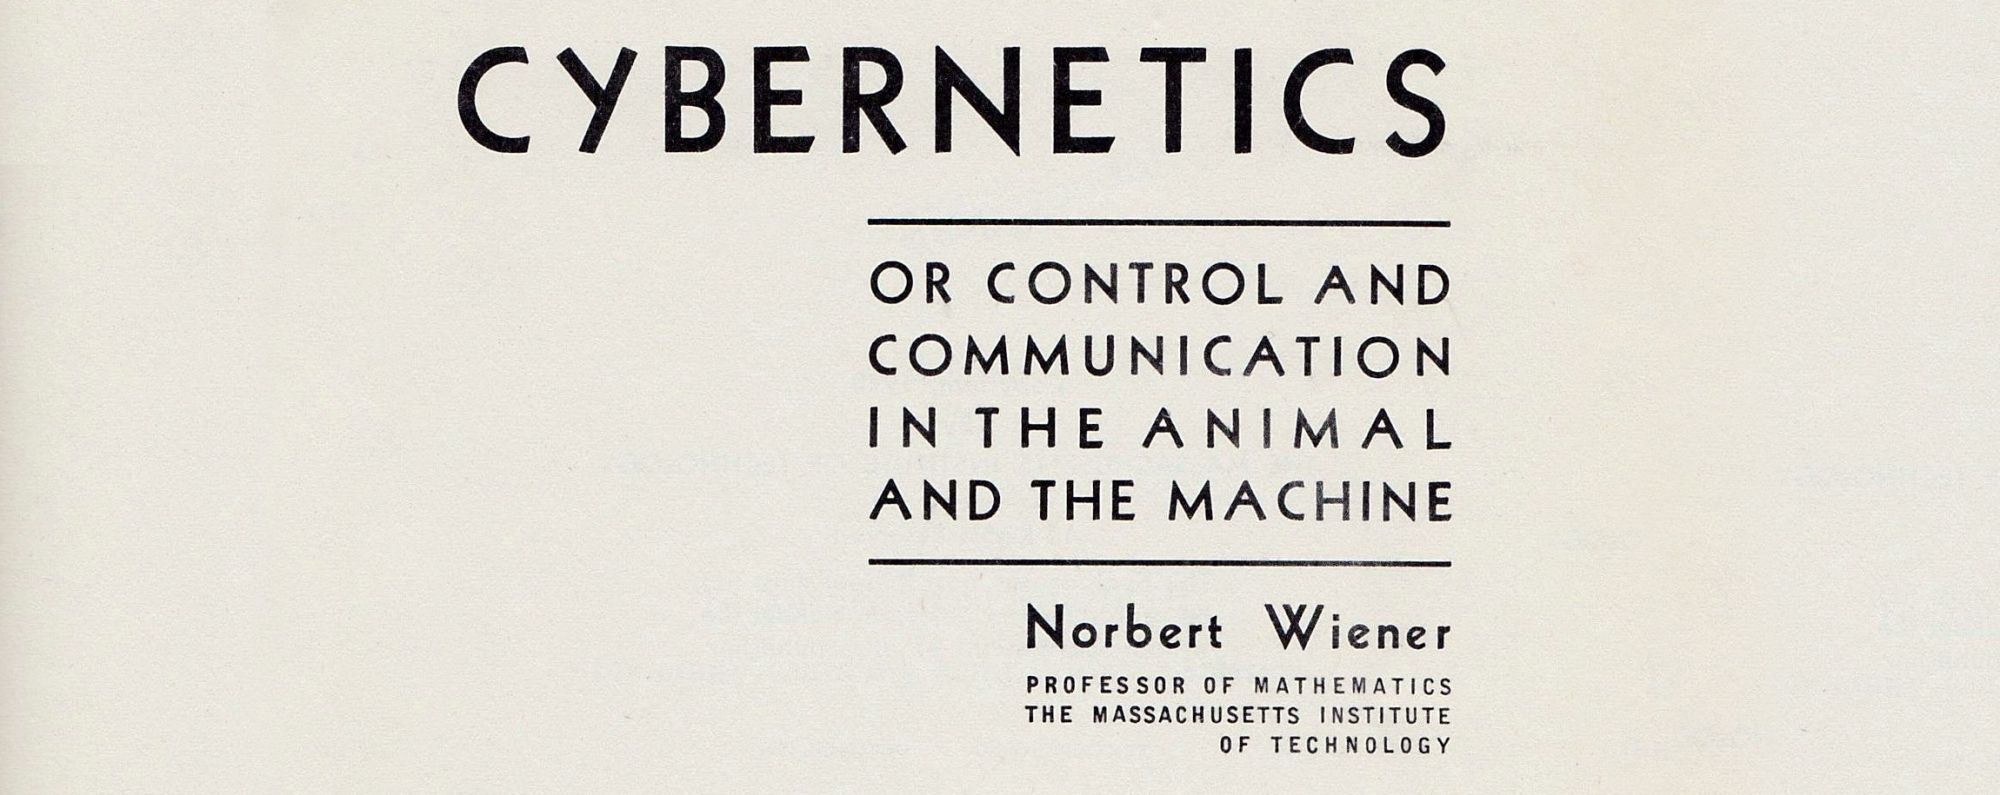 26 ноября 1984 года родился математик Норберт Винер